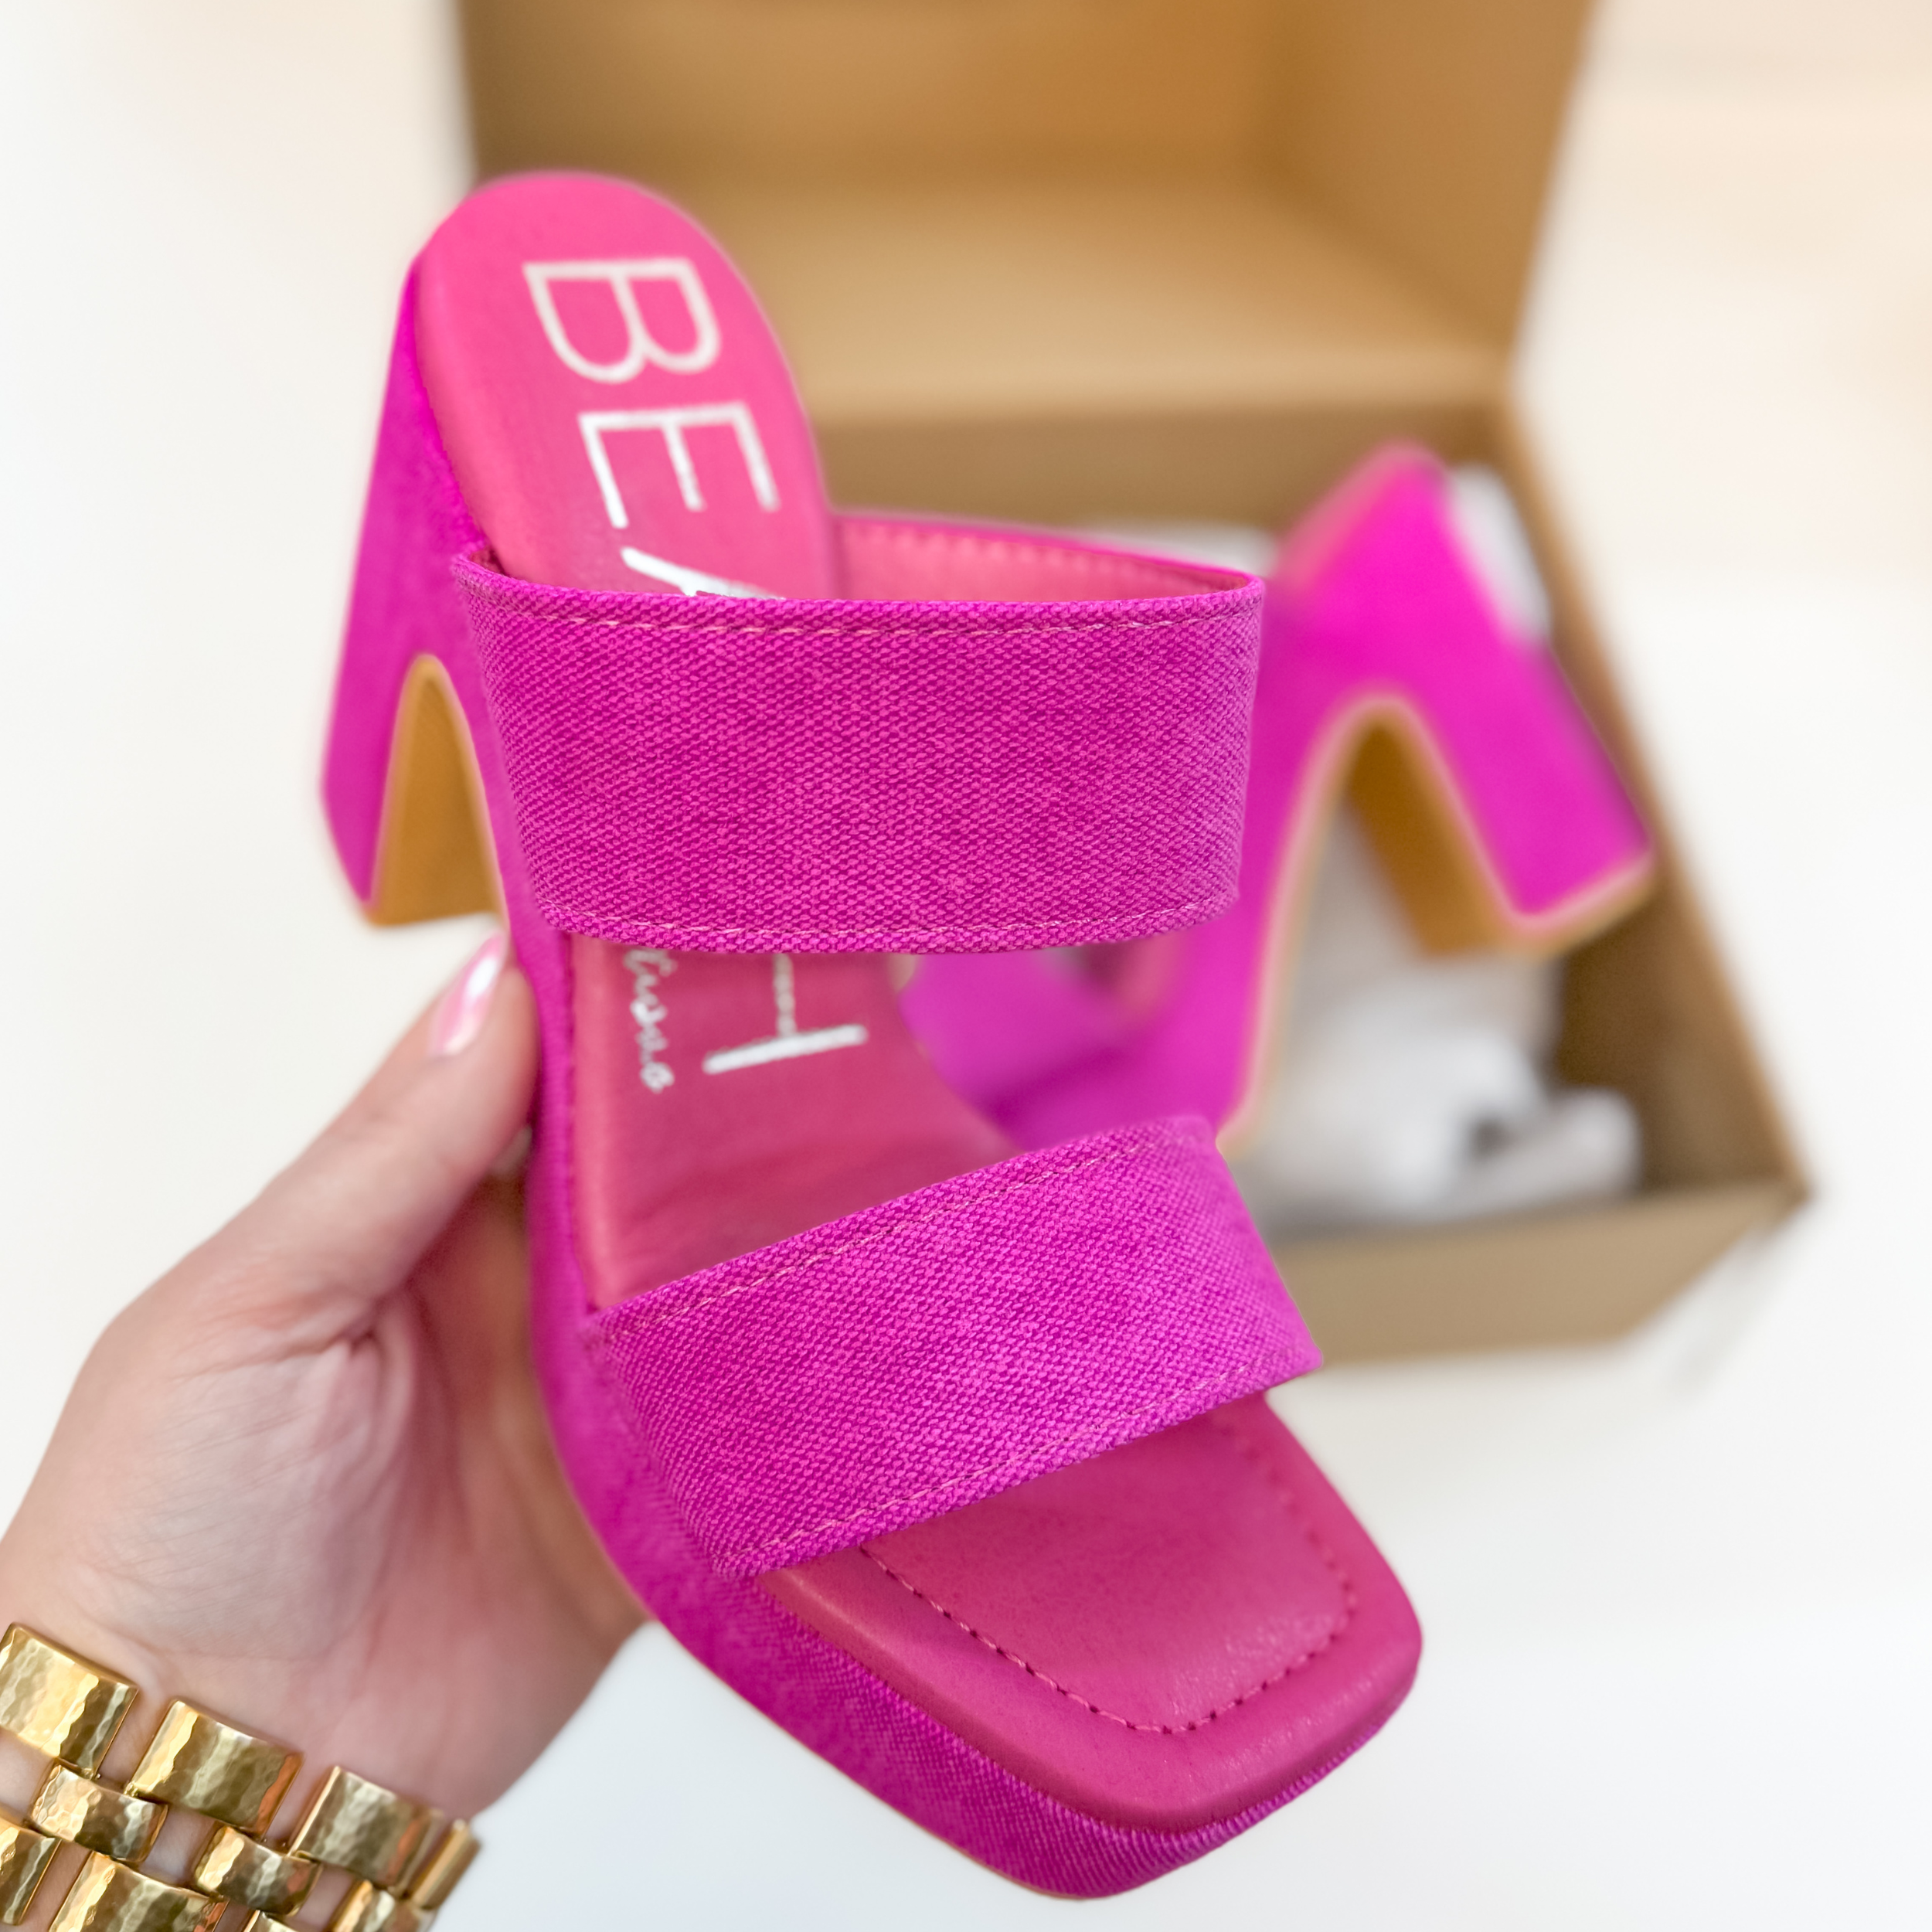 Matisse | Gem Heeled Sandal in Magenta - Giddy Up Glamour Boutique